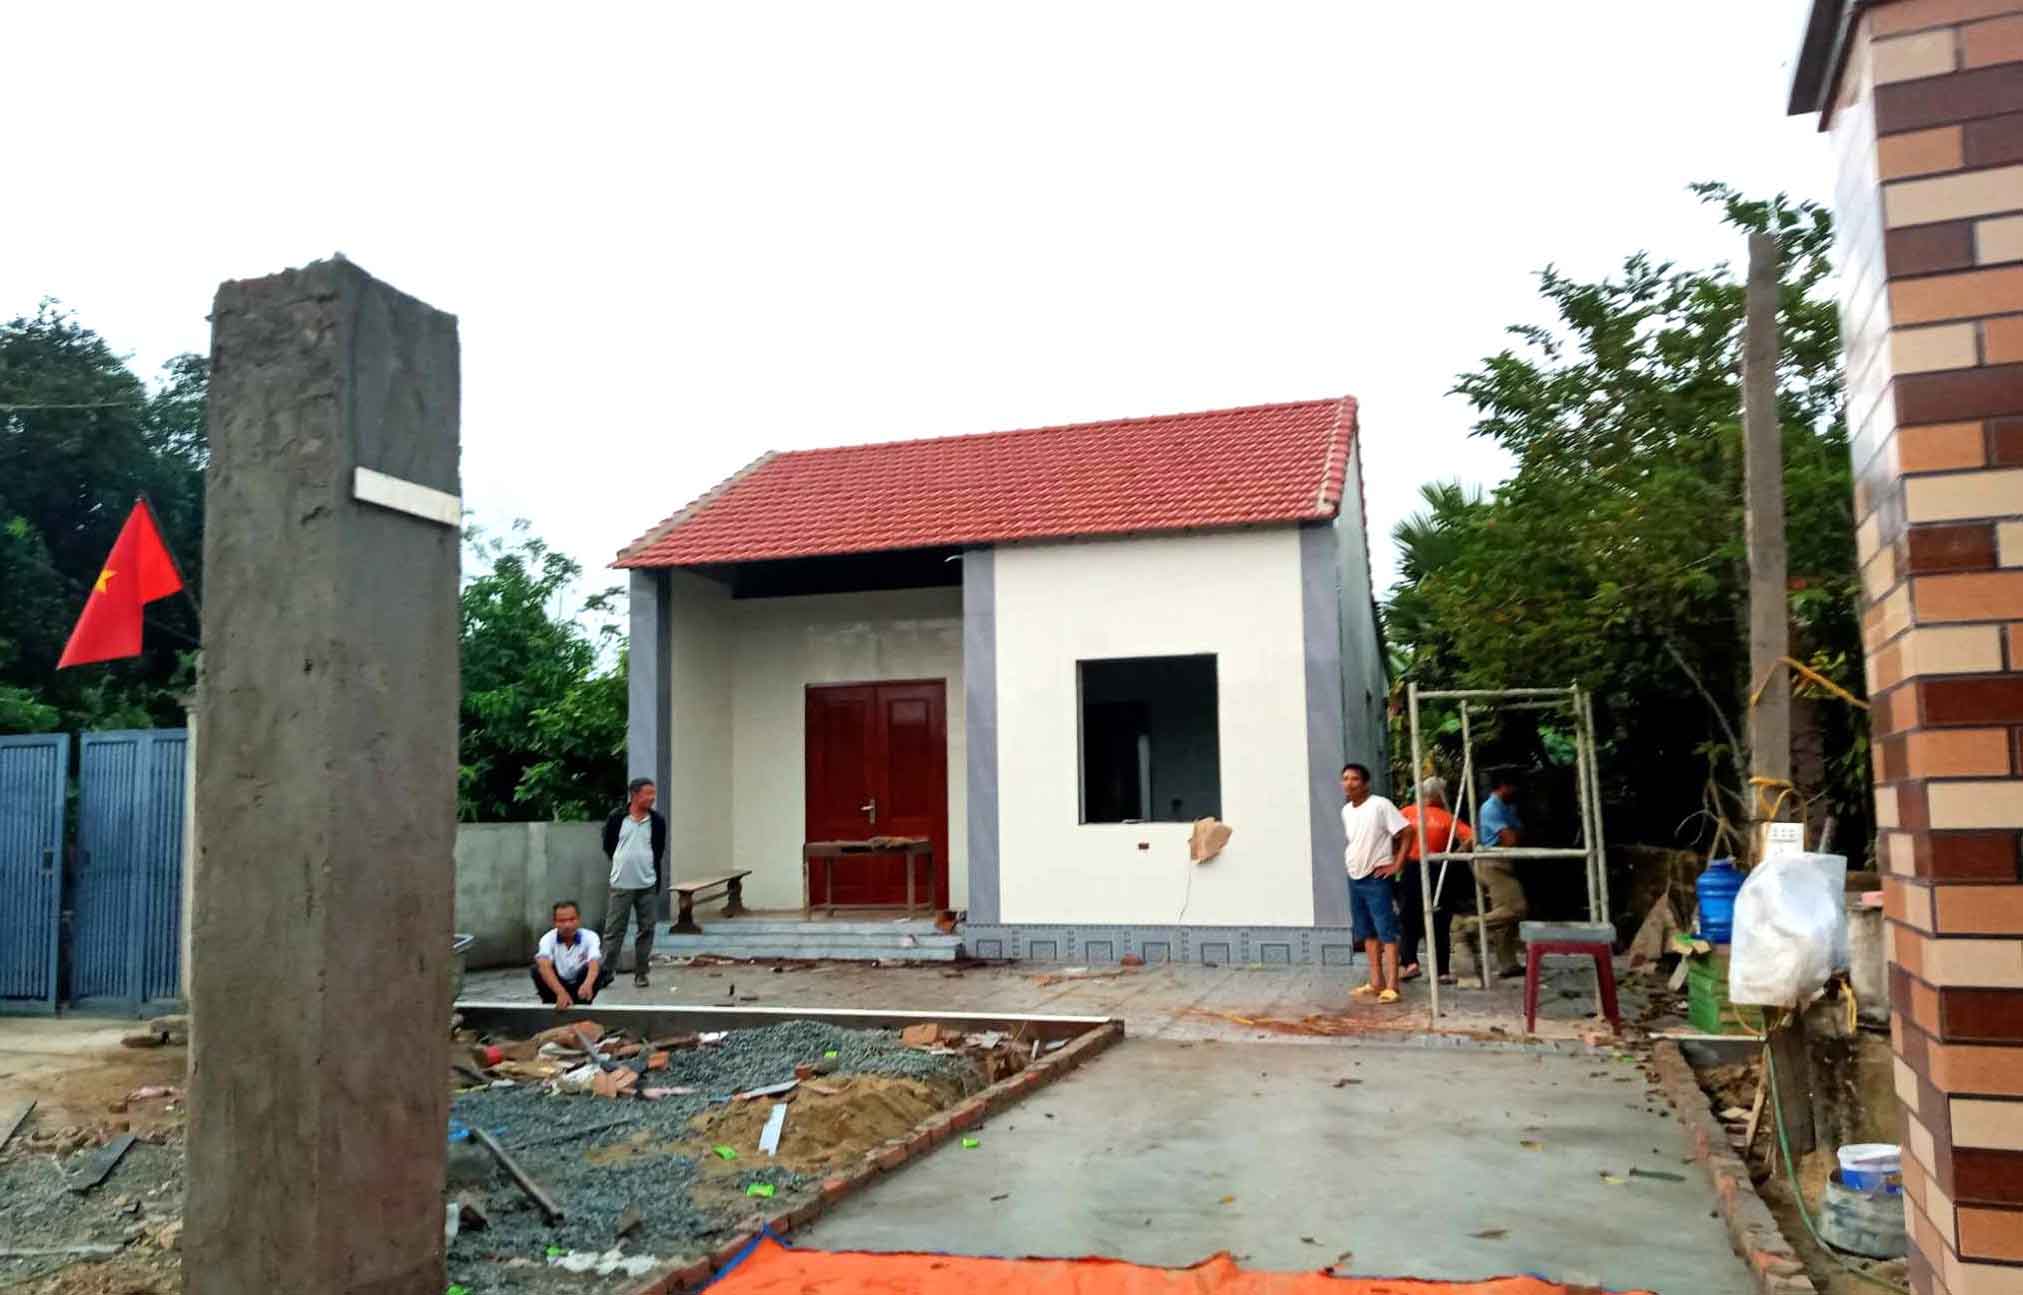 Ngôi nhà thờ vợ chồng thầy giáo Nguyễn Hồng Quang tại xã Yên Hồ, huyện Đức Thọ, Hà Tĩnh do học sinh cũ chung tay xây dựng. Ảnh: Quốc Thường